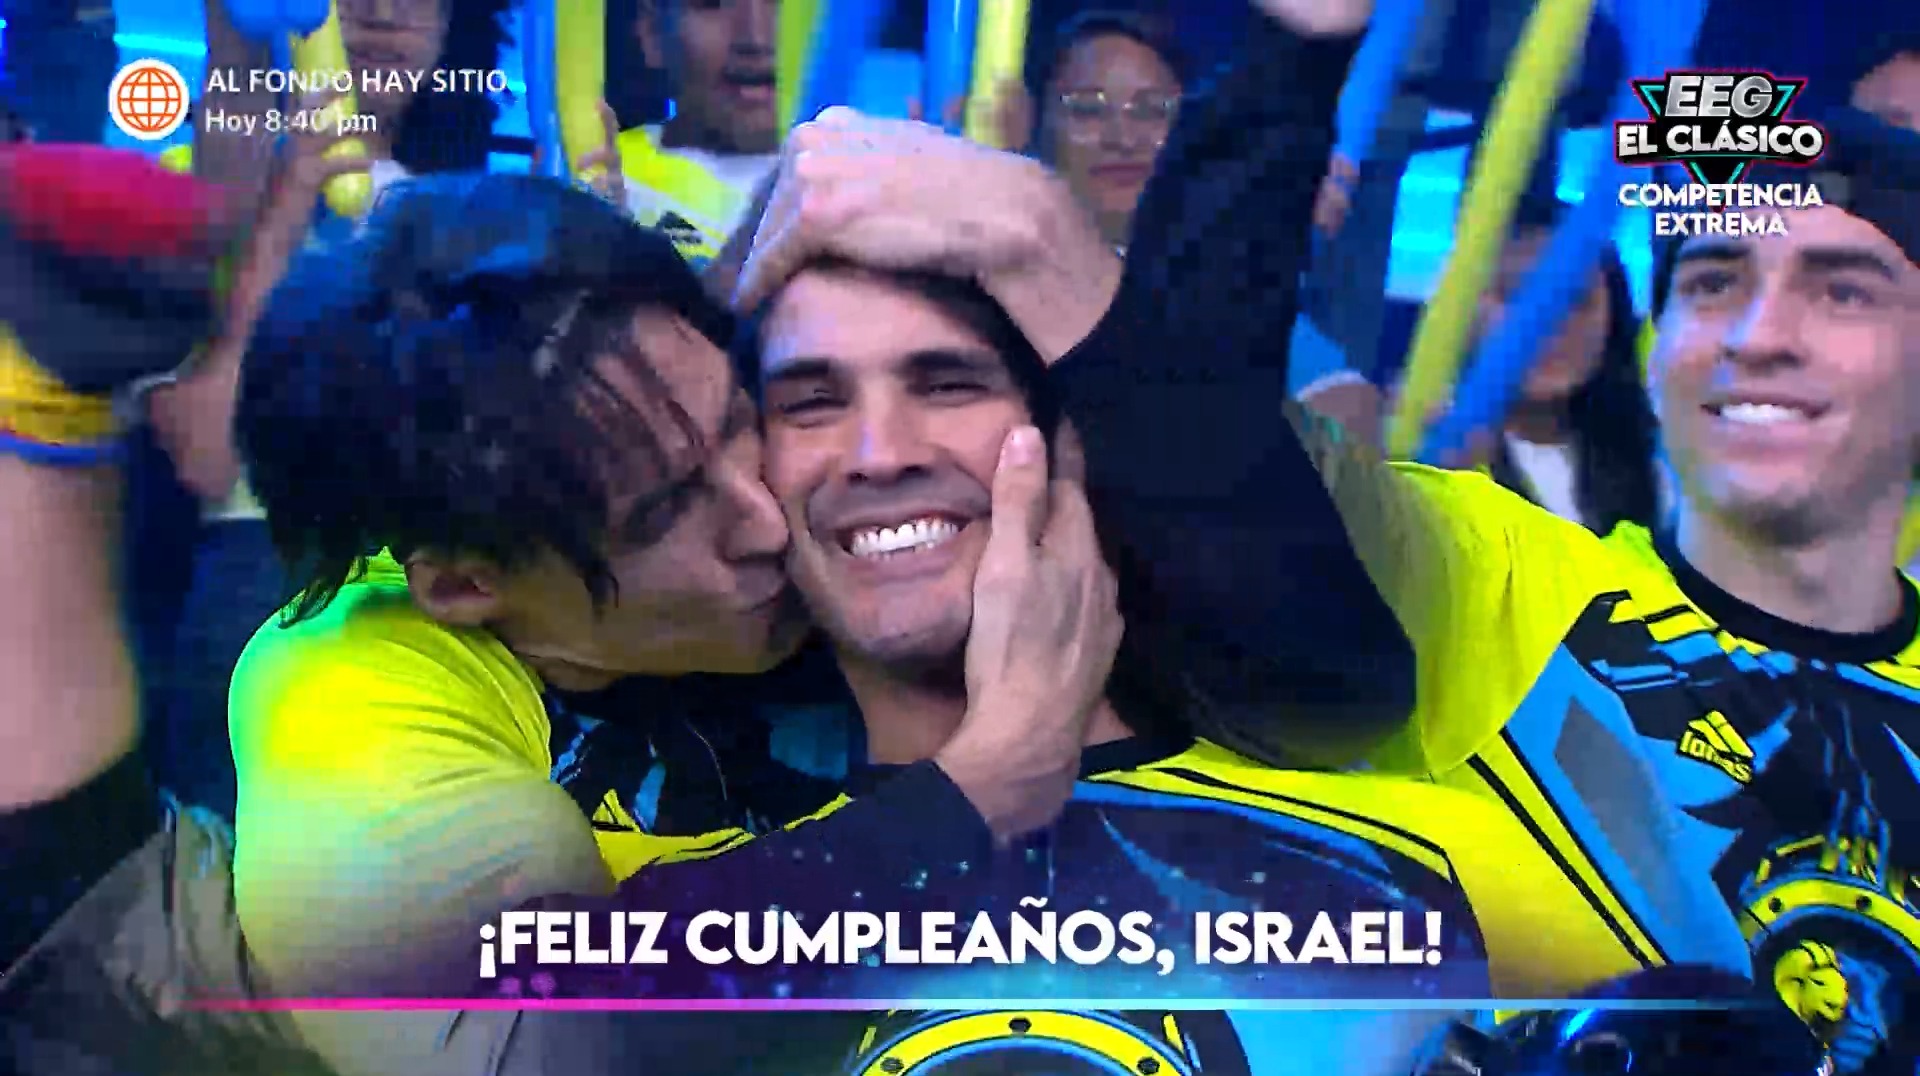 Facundo besó a Israel por su cumpleaños. Foto: América TV